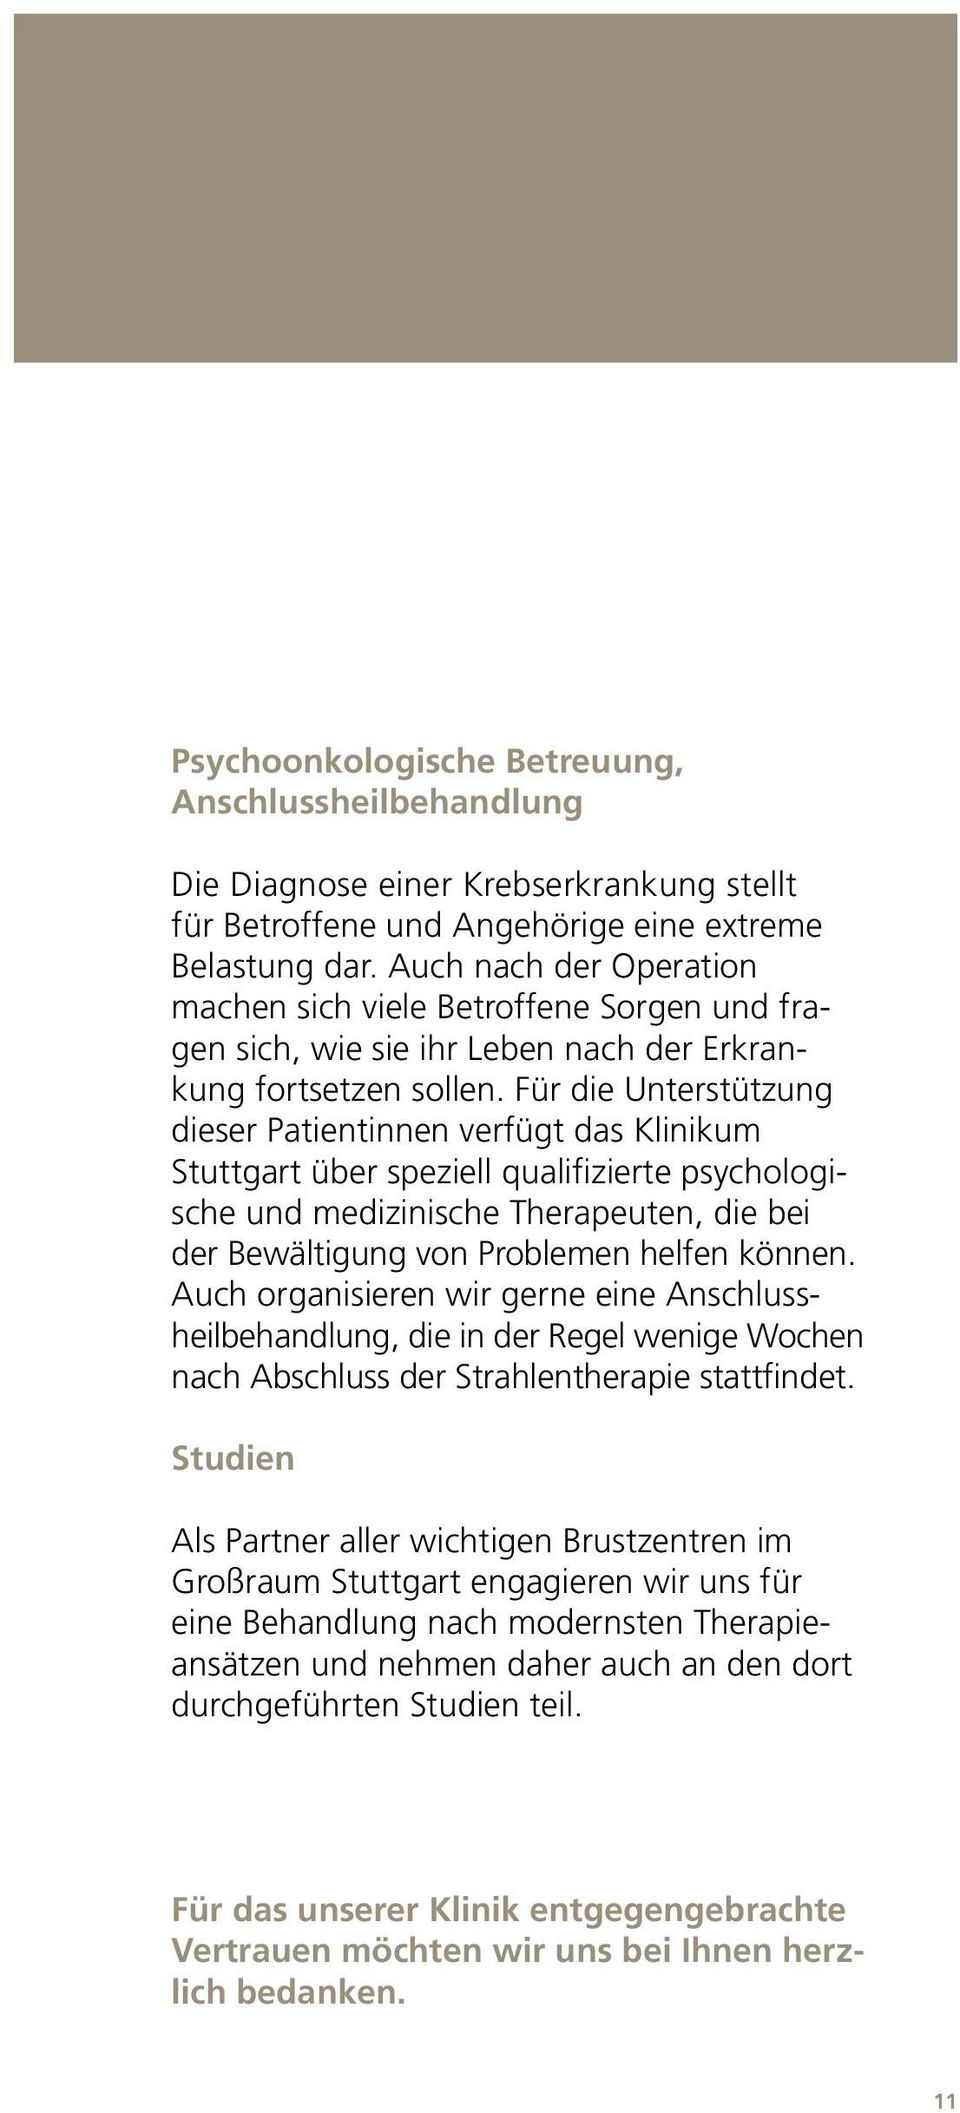 Für die Unterstützung dieser Patientinnen verfügt das Klinikum Stuttgart über speziell qualifizierte psychologische und medizinische Therapeuten, die bei der Bewältigung von Problemen helfen können.